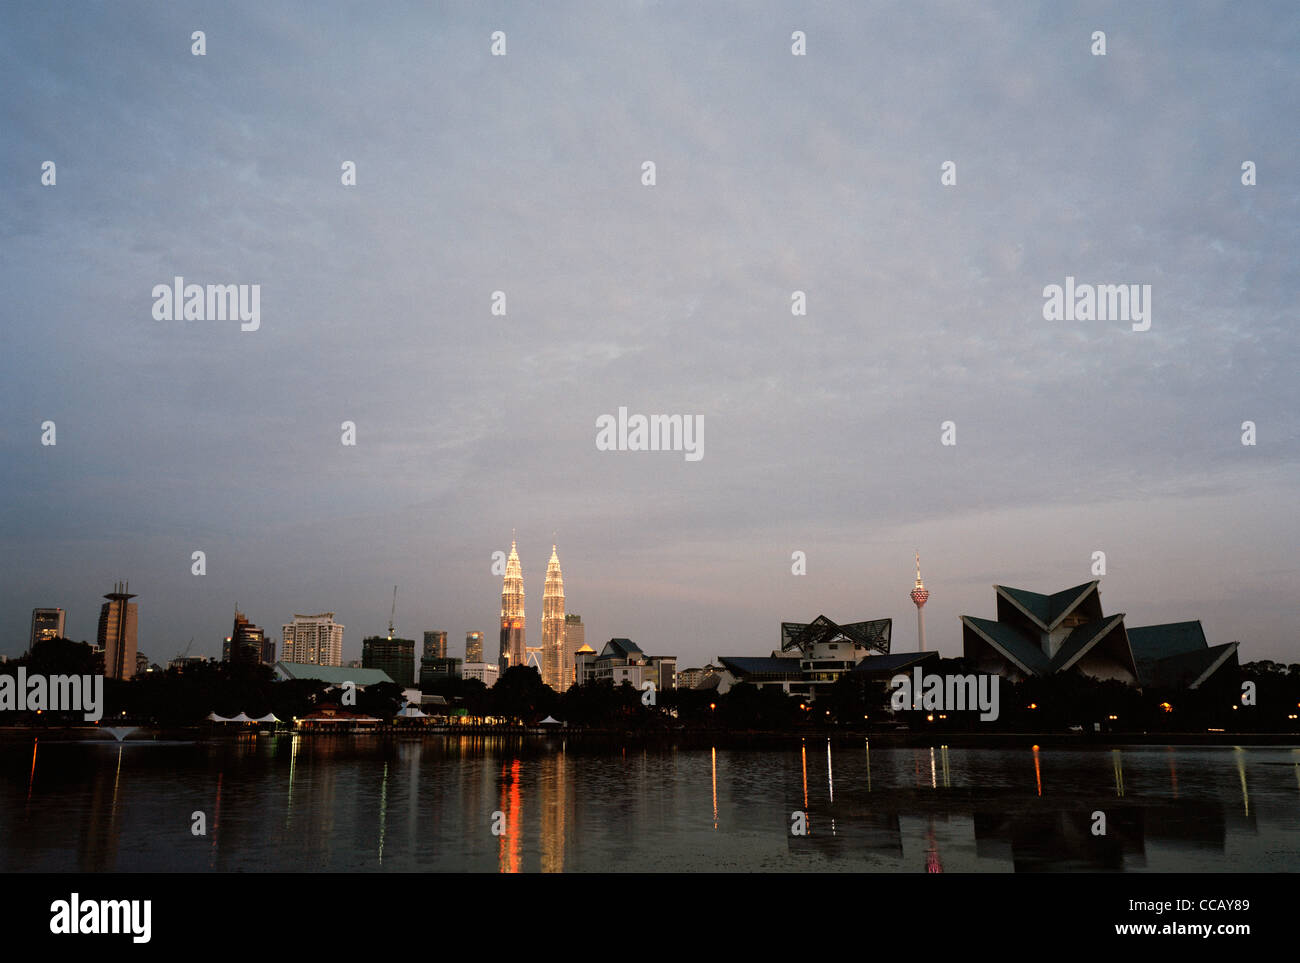 Einen Panoramablick auf See Titiwangsa Gärten auf die Skyline von Kuala Lumpur und die Petronas Towers und Istana Budaya in Malaysia Fernost Südostasien. Stockfoto